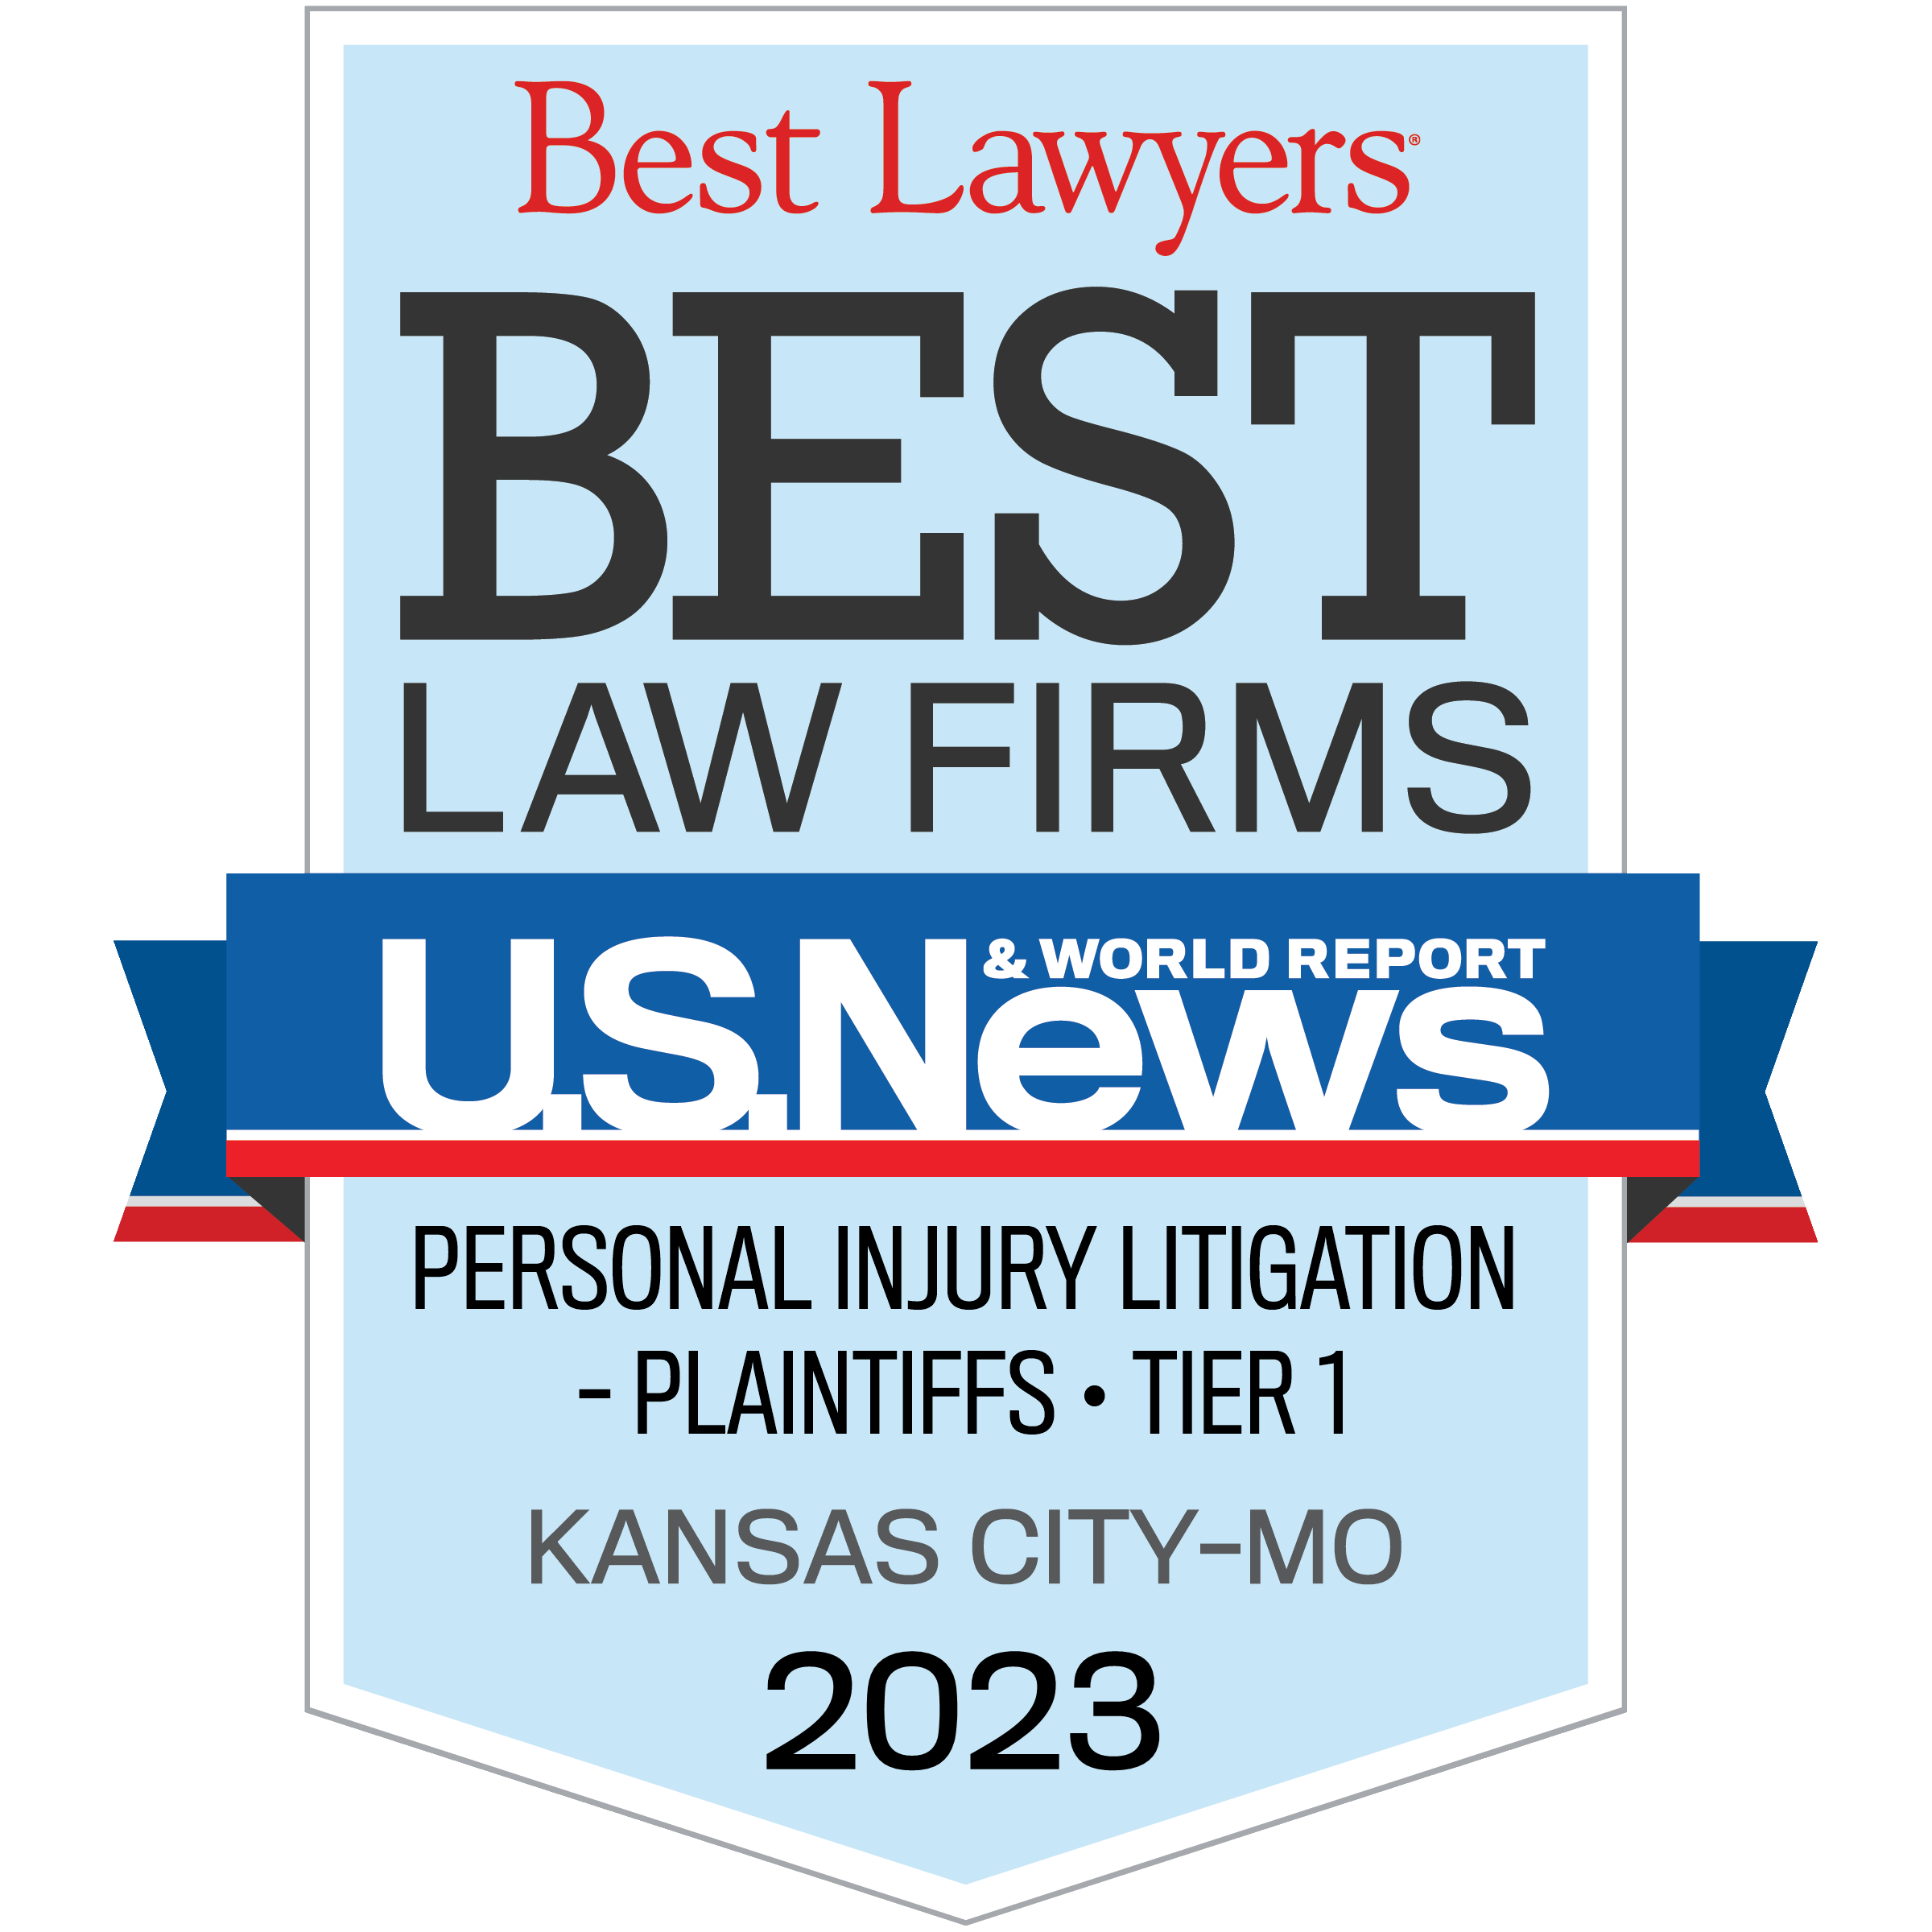 2023 presley & presley best law firms personal injury badge